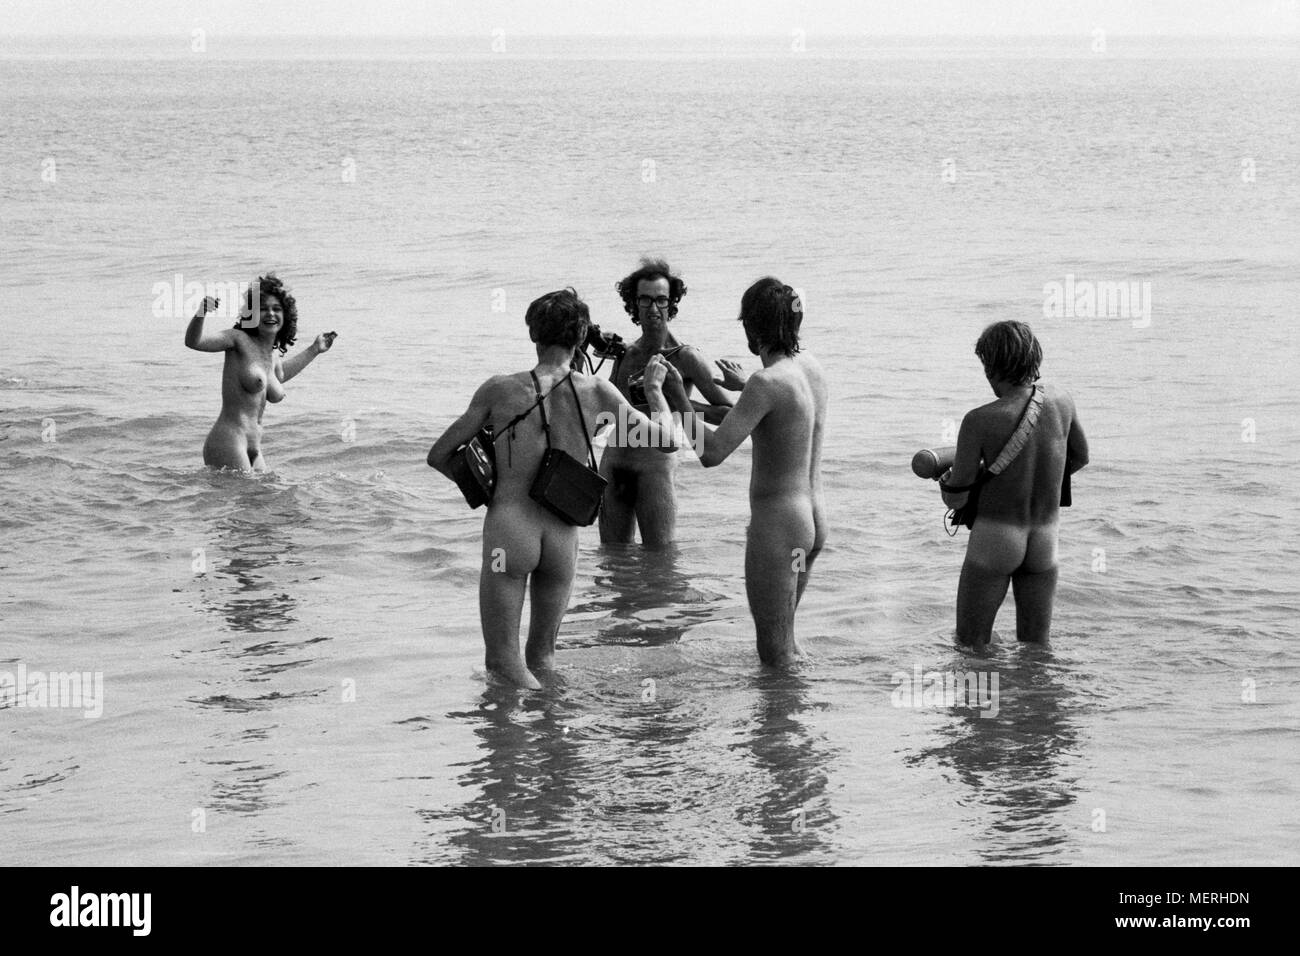 Ein TV-Team an der 1970 Isle of Wight Pop Festival, Filmen Hippies nackt baden im Süßwasser Bucht für eine News. Hippy Wachen waren angewiesen, alle Mitglieder der Presse, die Zugang zu den Bay nackt ausziehen, sich vor dem Filmen oder Fotografieren, die tapfersten Mitglieder der Medien vergnügt haben. Stockfoto